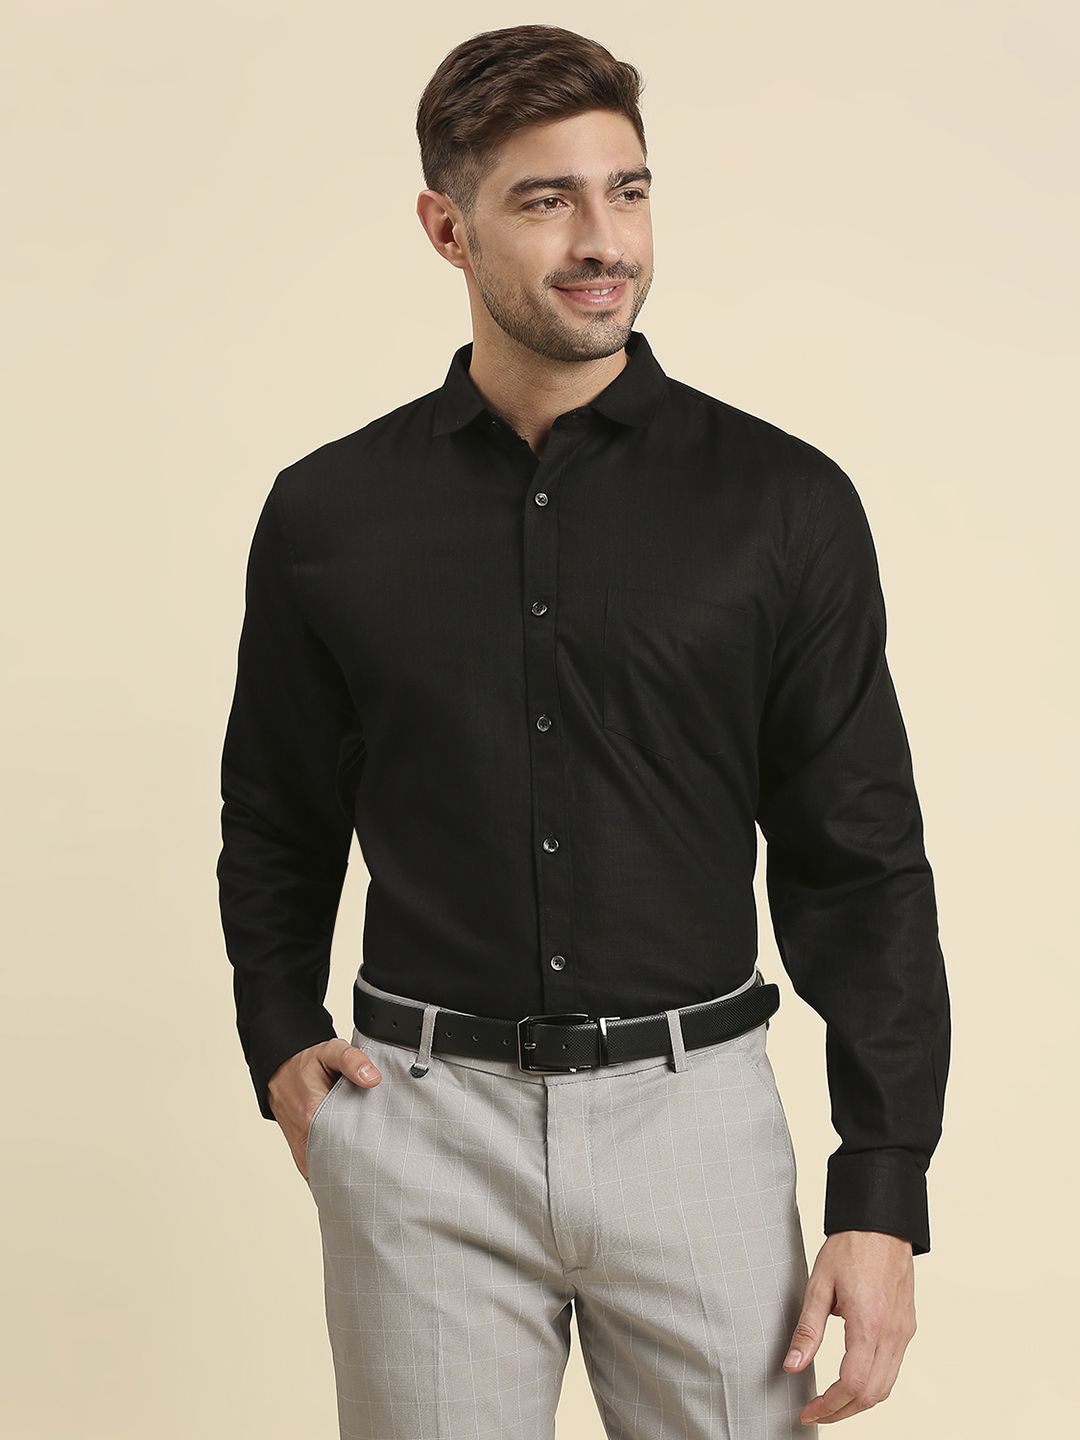 Black Cotton Full Sleeve Formal Shirt For Men